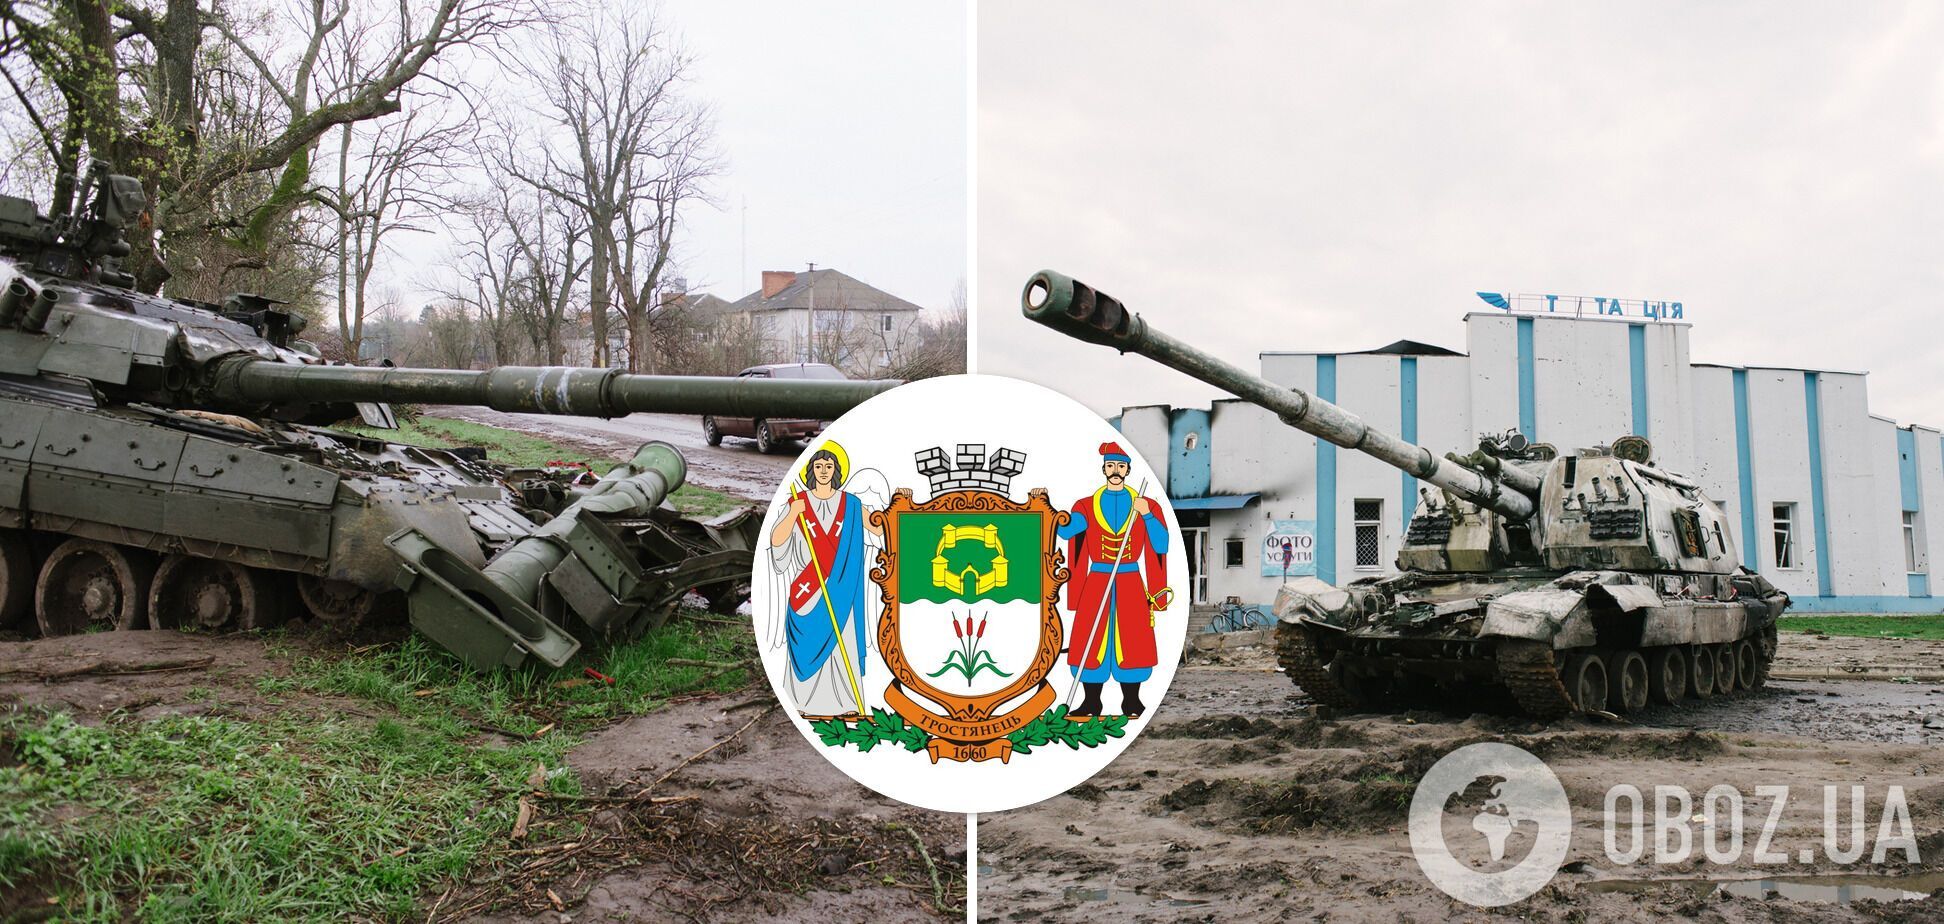 26 марта 2022 года Силы обороны Украины освободили город Тростянец